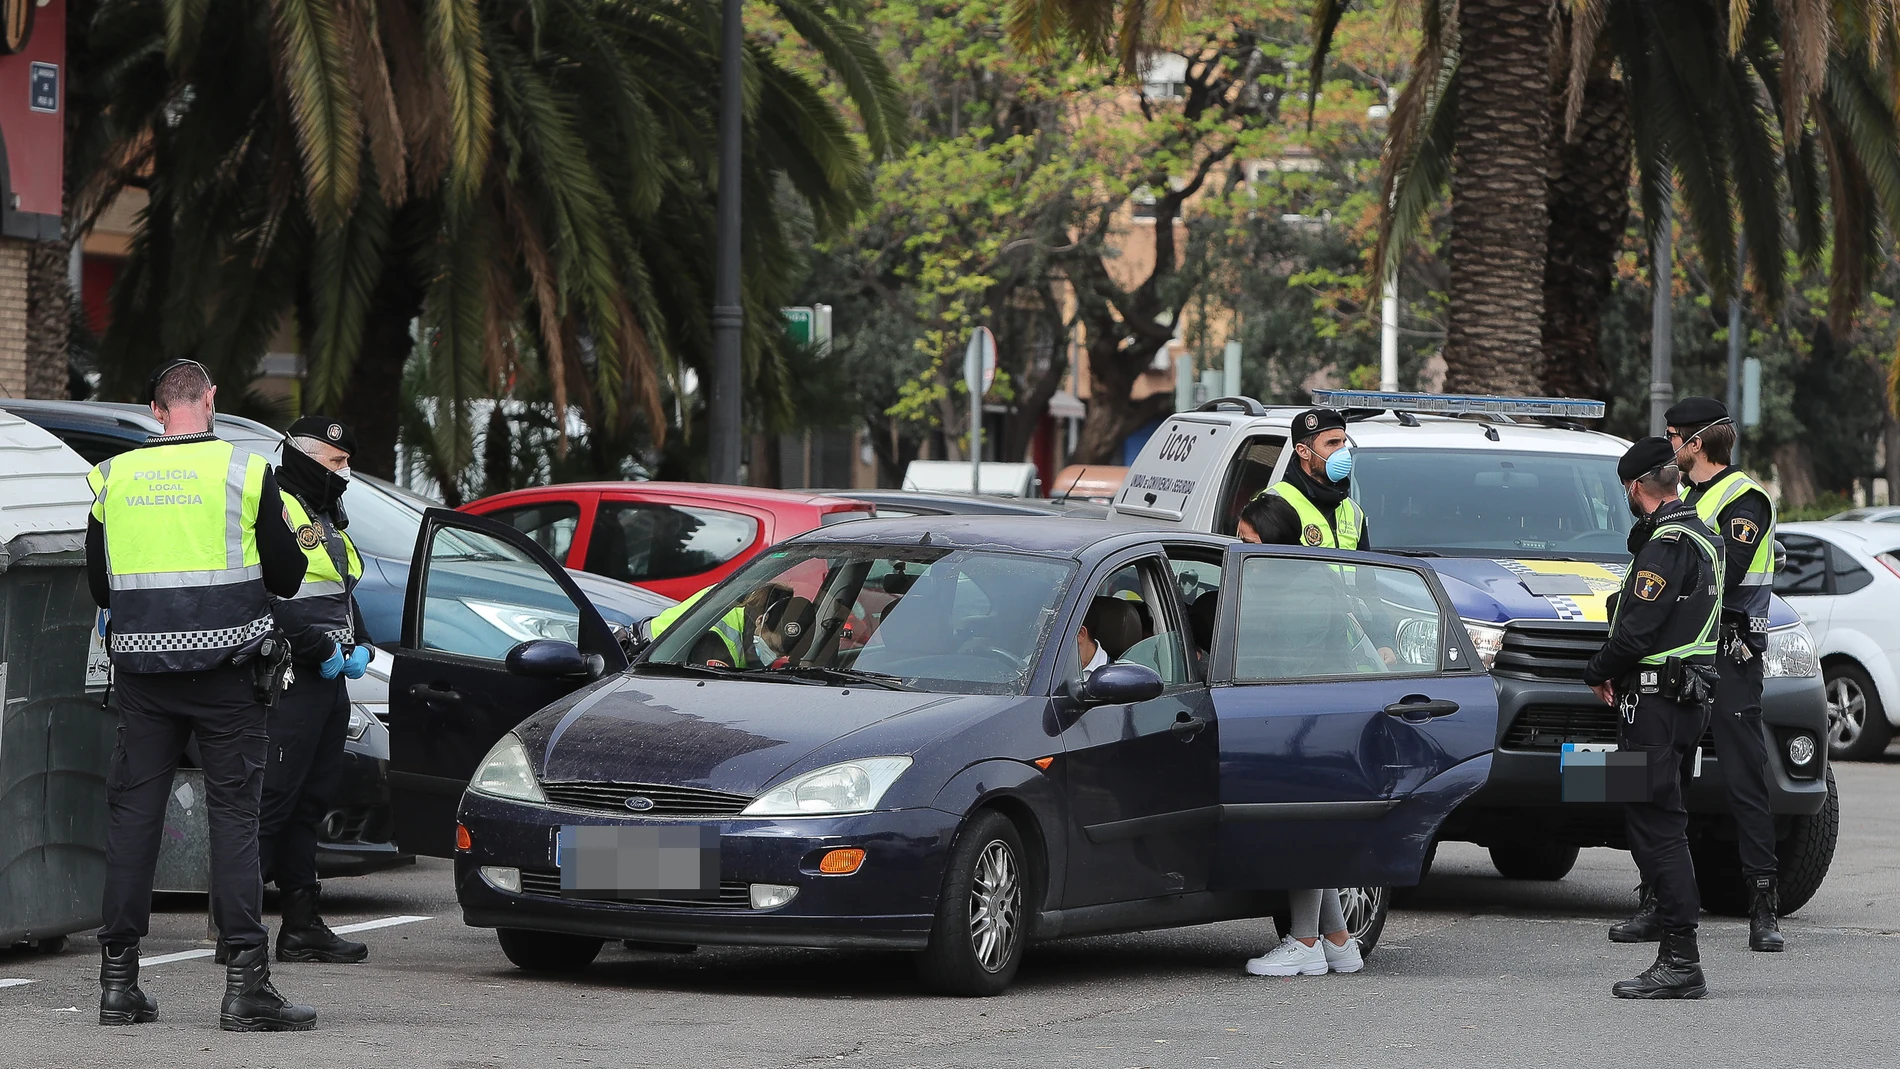 La Policía confisca un vehículo e impone una multa a su dueño por no respetar el estado de alarma en Valencia (Imagen de archivo)